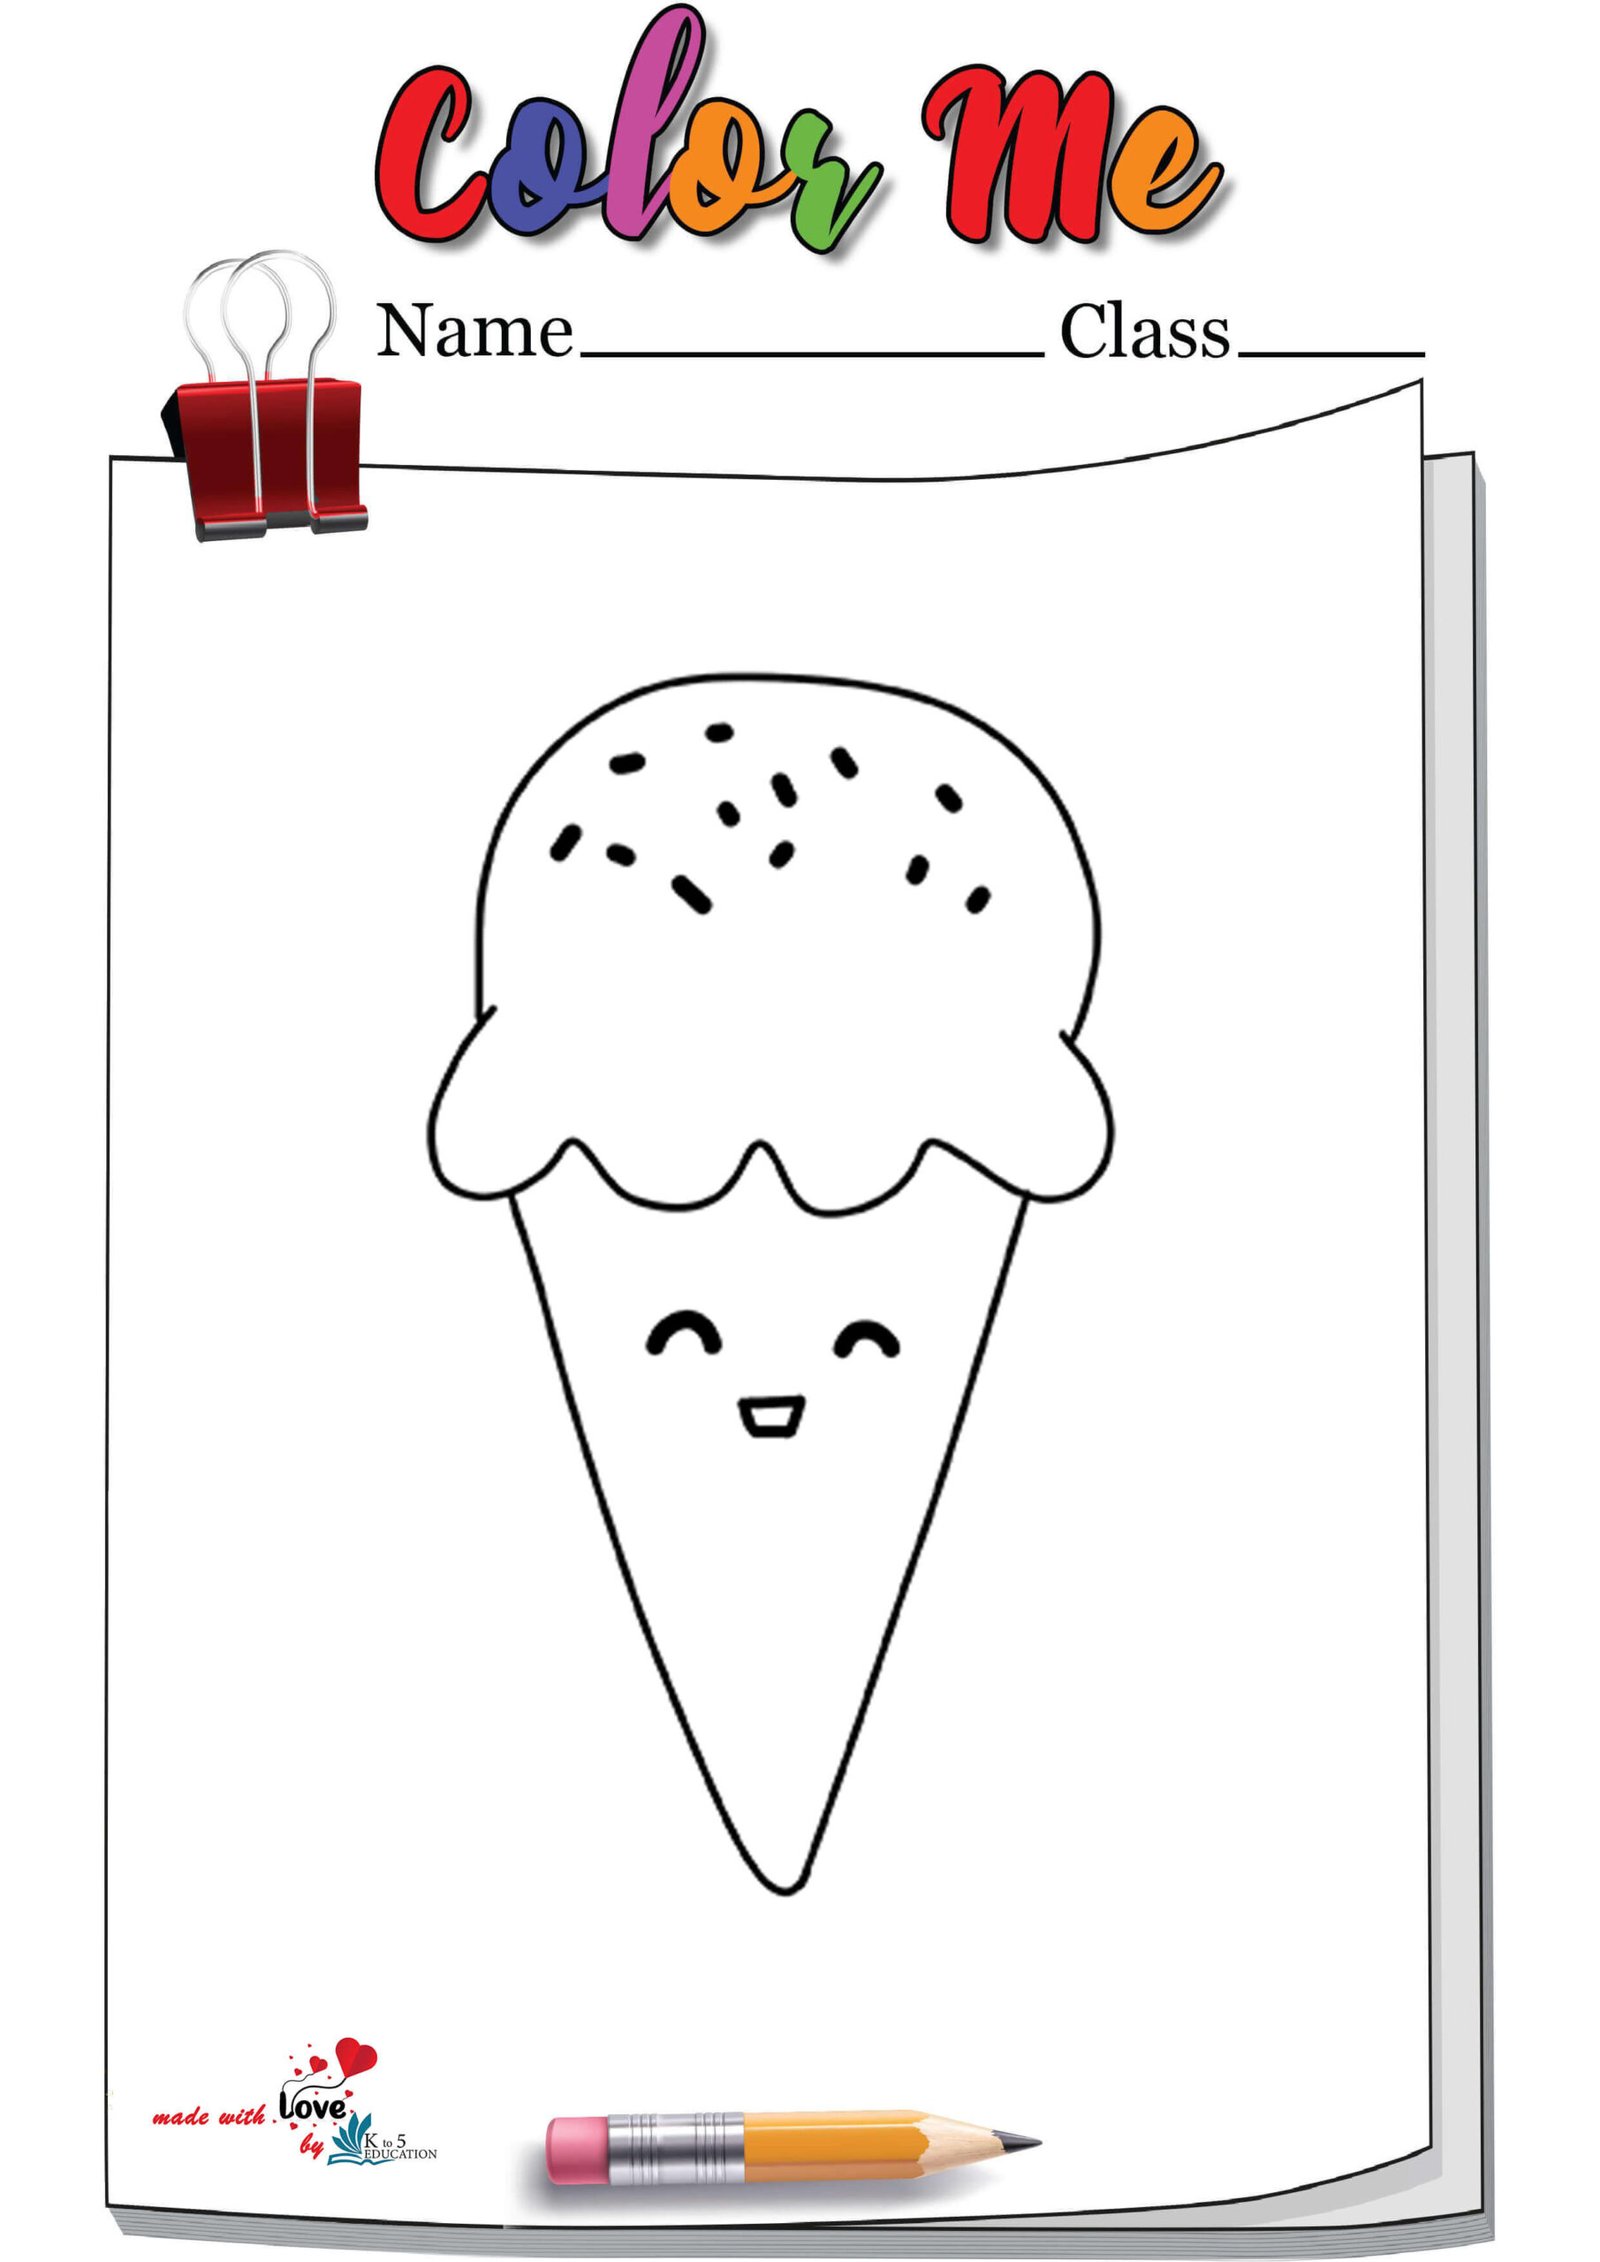 Ice-cream Cones Coloring Page